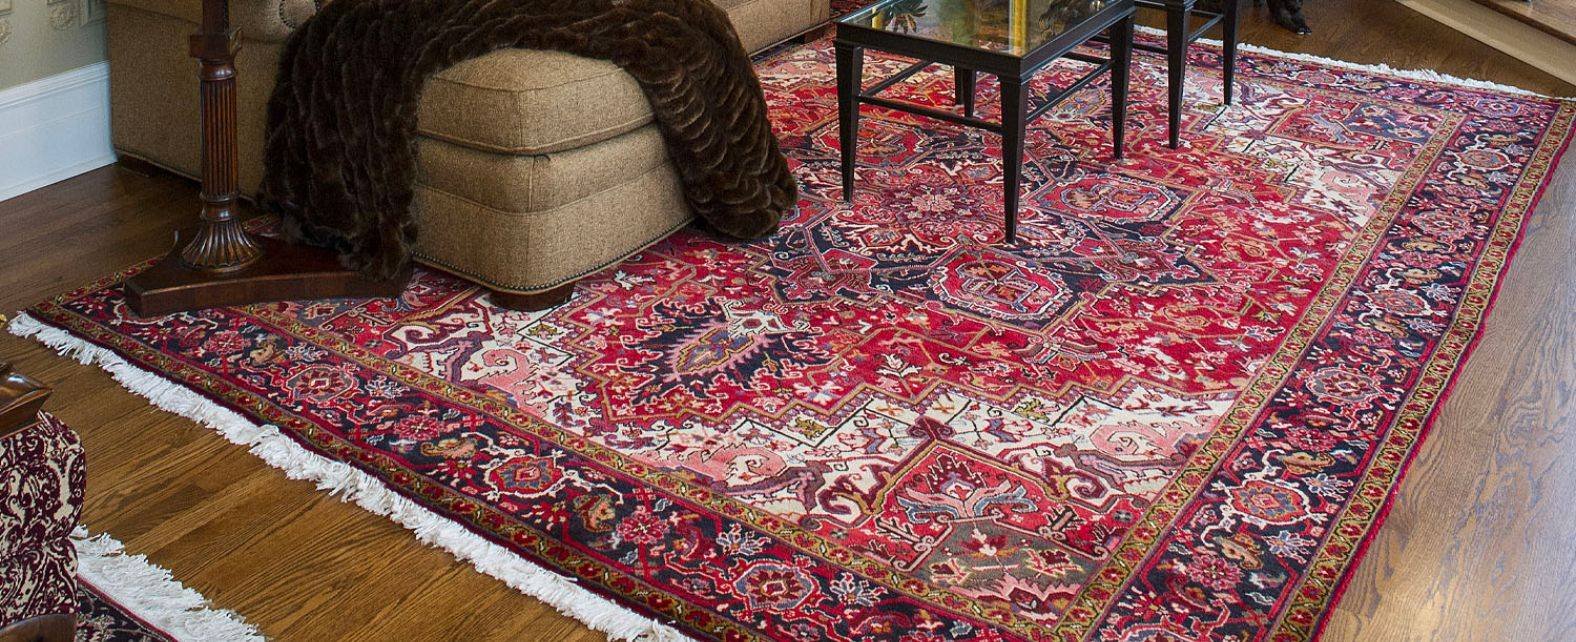 Grand tapis persan rouge sur le sol d’un salon oriental